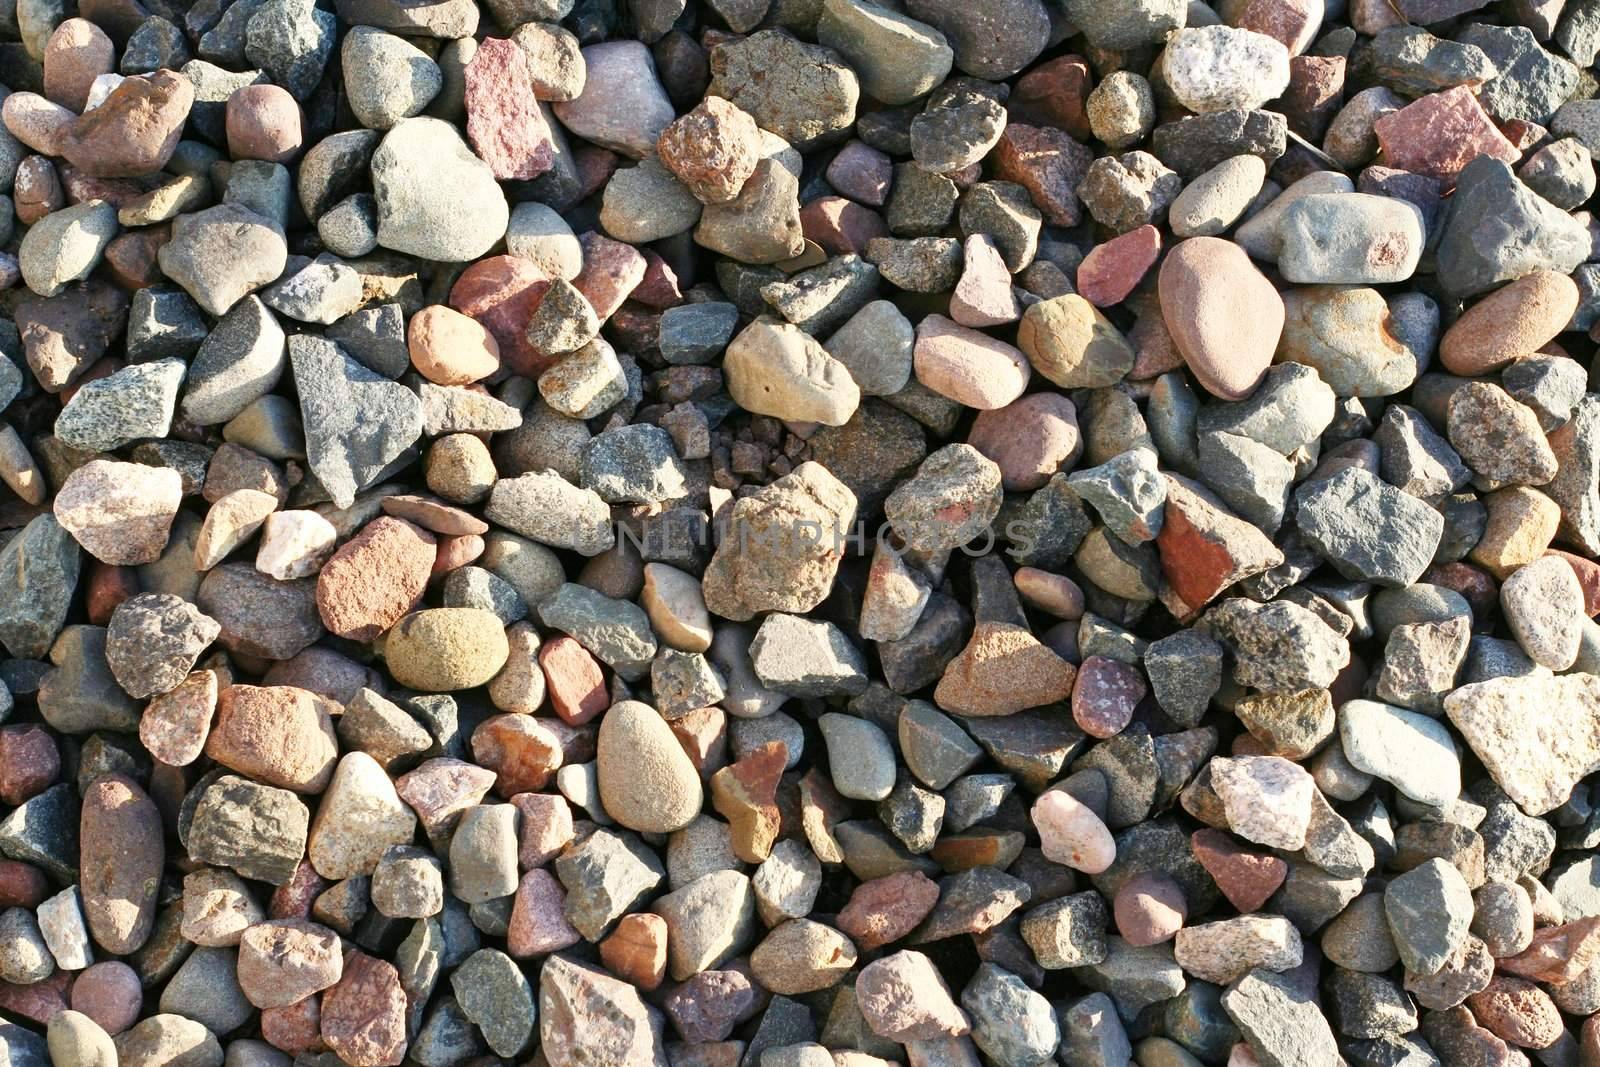 Pea gravel